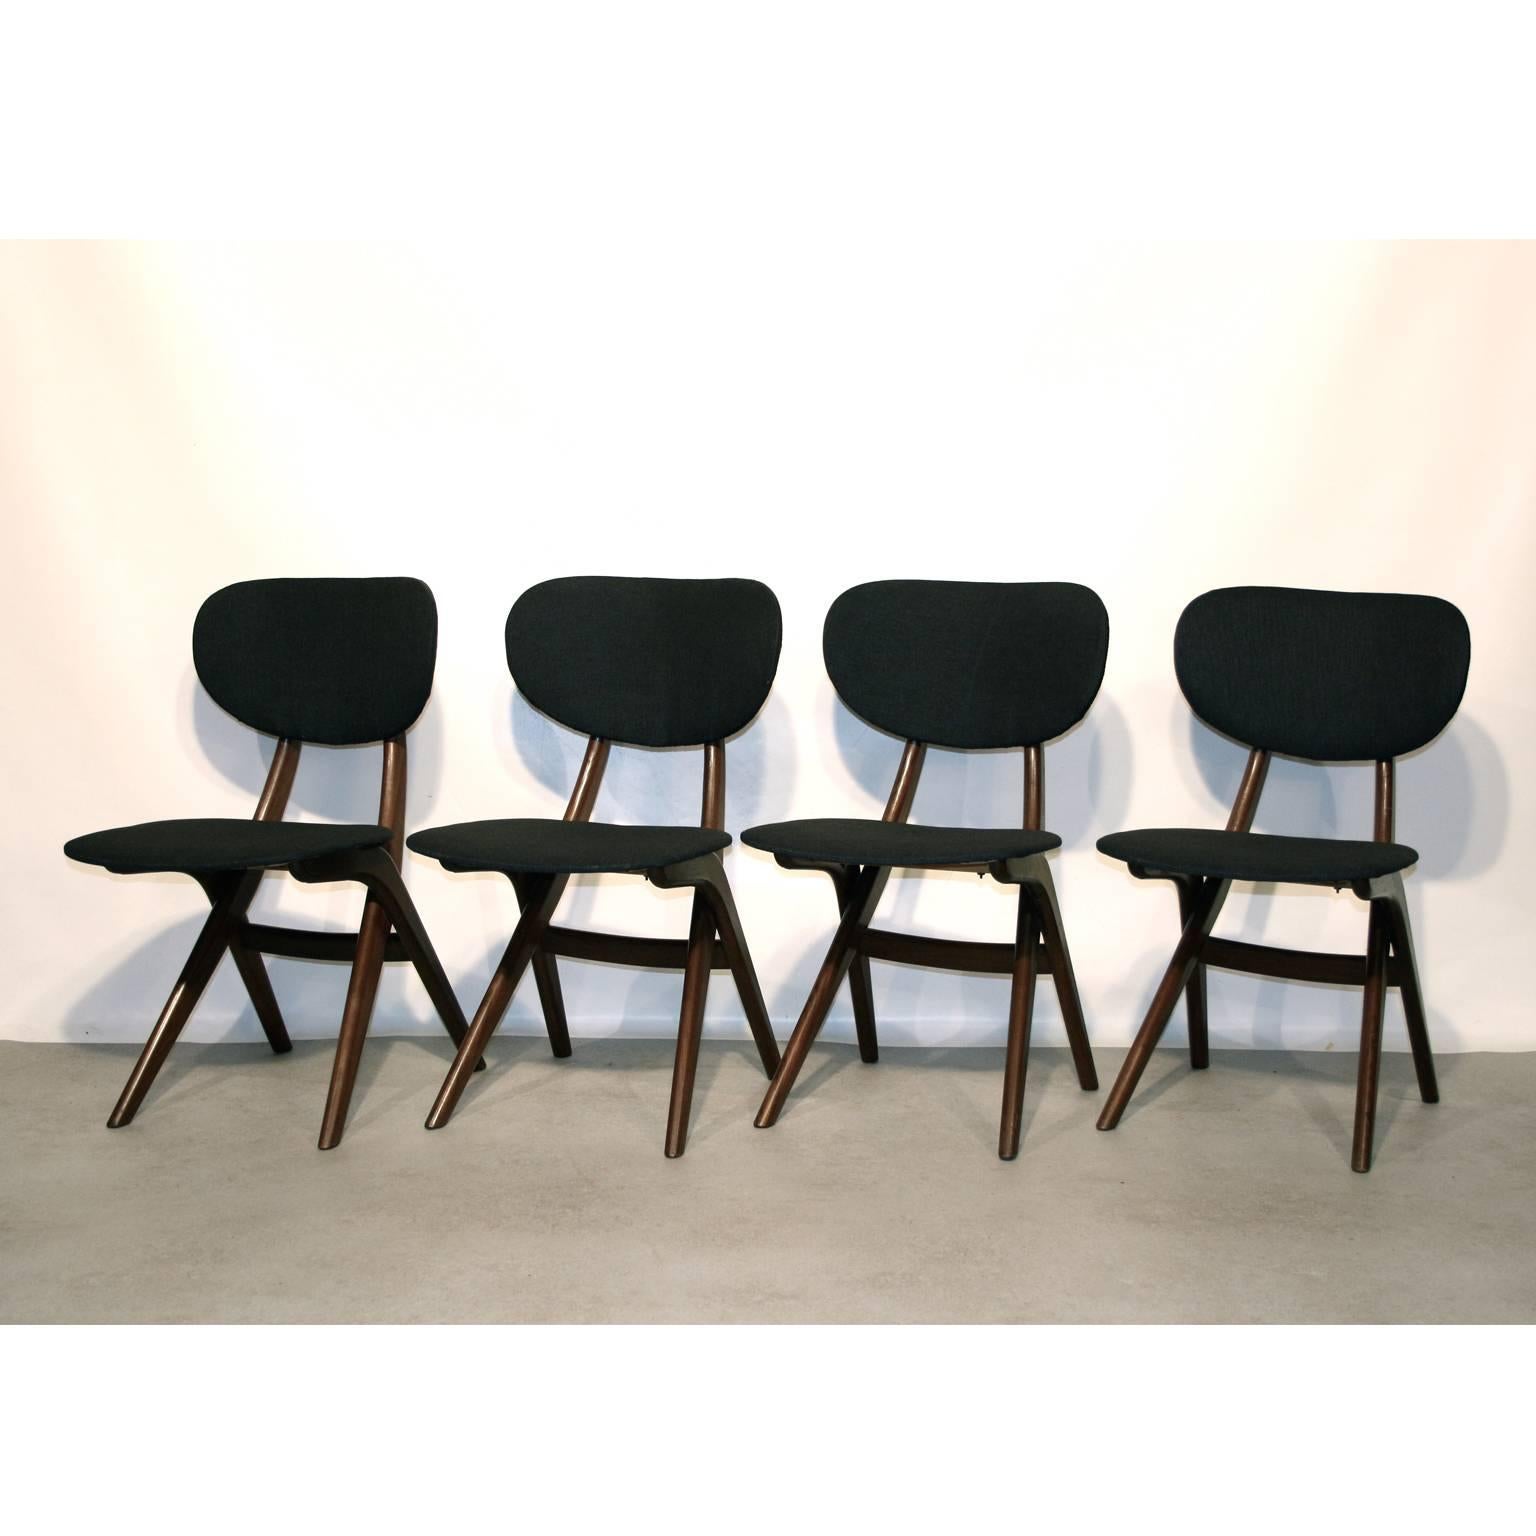 Scandinavian Modern Dining Chairs by Louis Van Teeffelen for Wébé, Dutch Design, 1950s For Sale